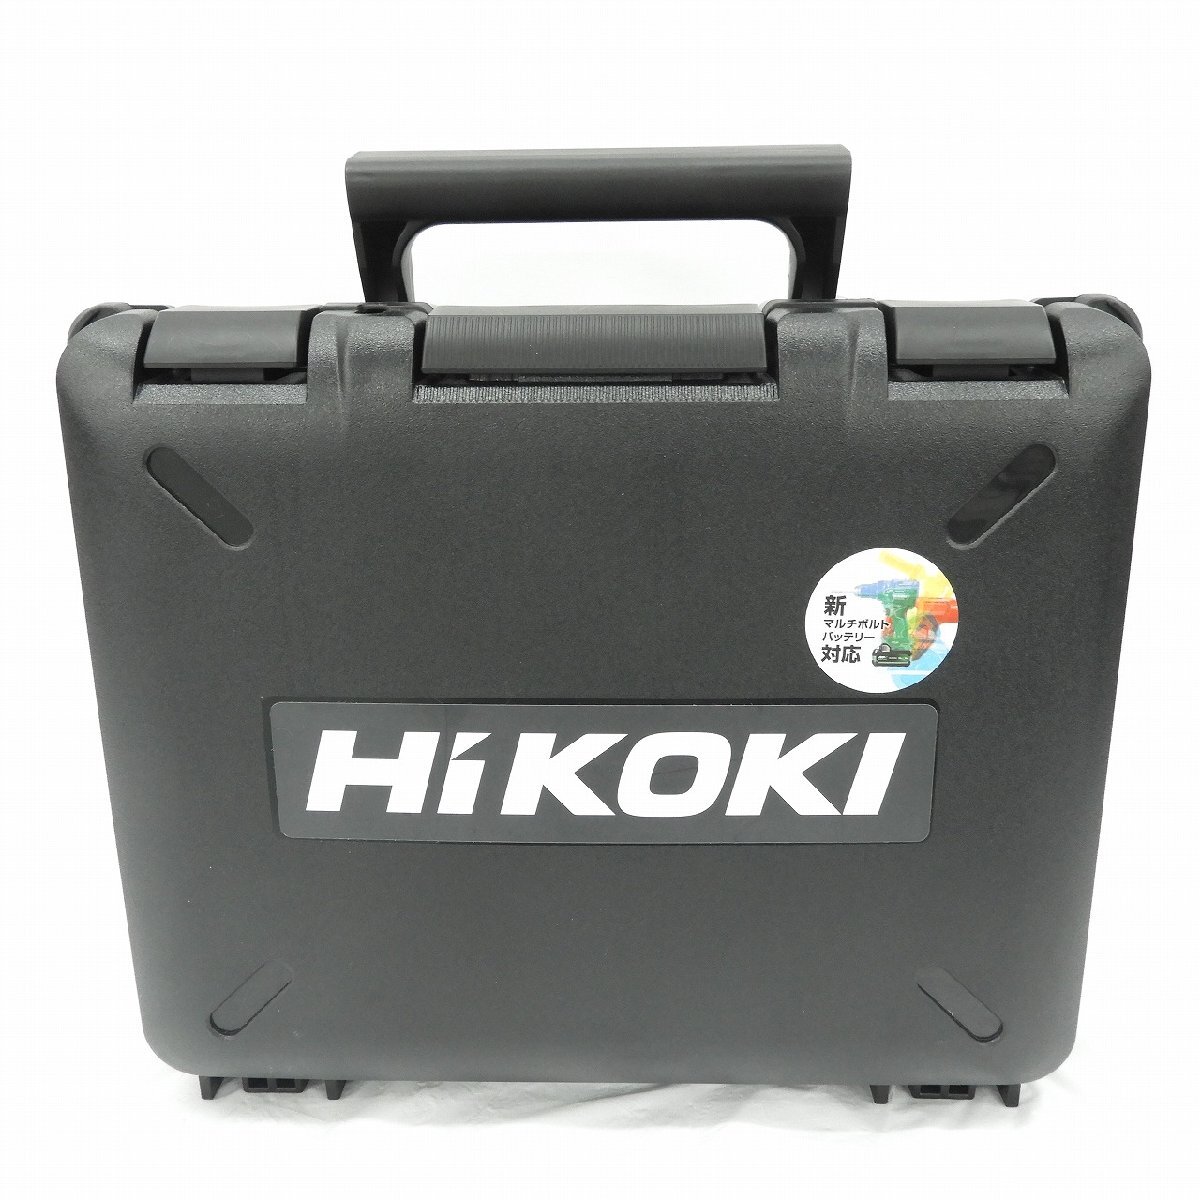 【未使用品】HiKOKI ハイコーキ コードレスインパクトドライバ WH36DC 2XPDSZ ディープオーシャンブルー 36V 5780-4148 11536011 0331_画像2